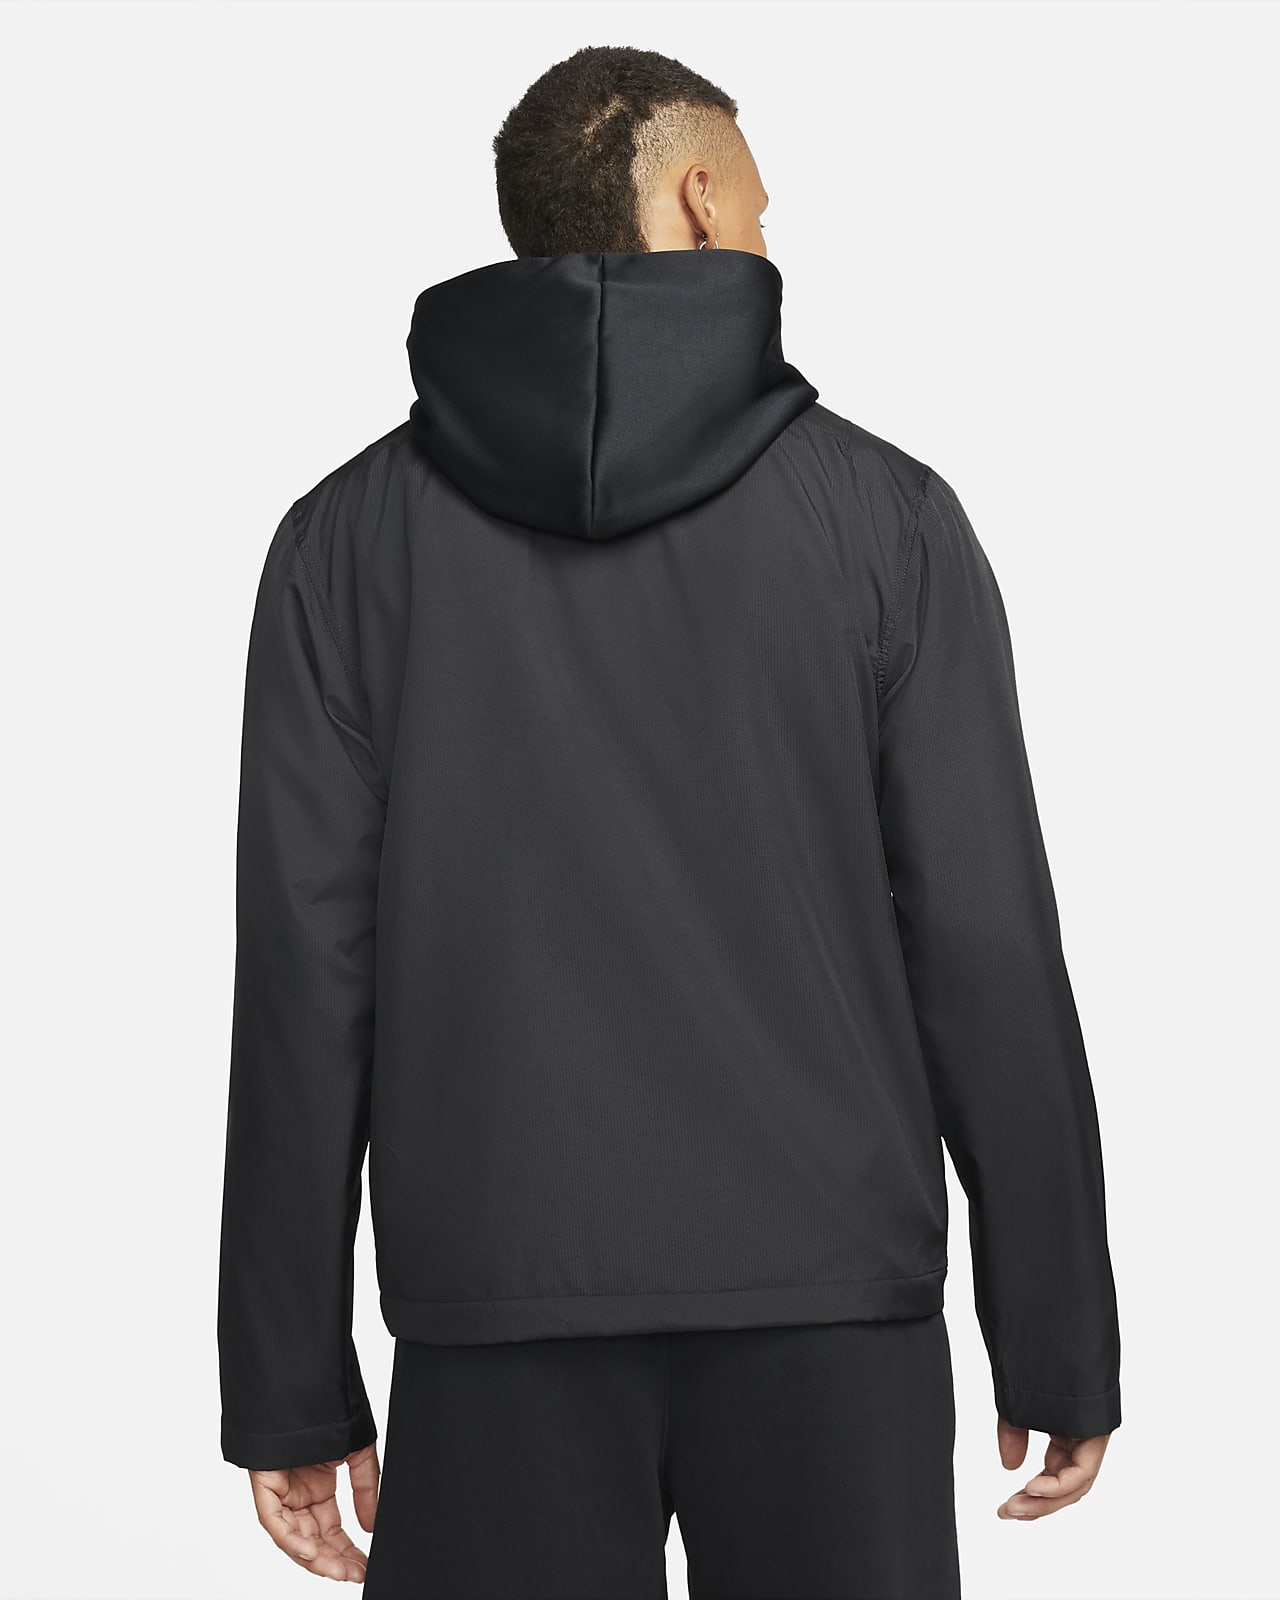 Sudadera con gorro de básquetbol acondicionada el invierno para hombre Nike Therma-FIT Standard Issue. Nike.com